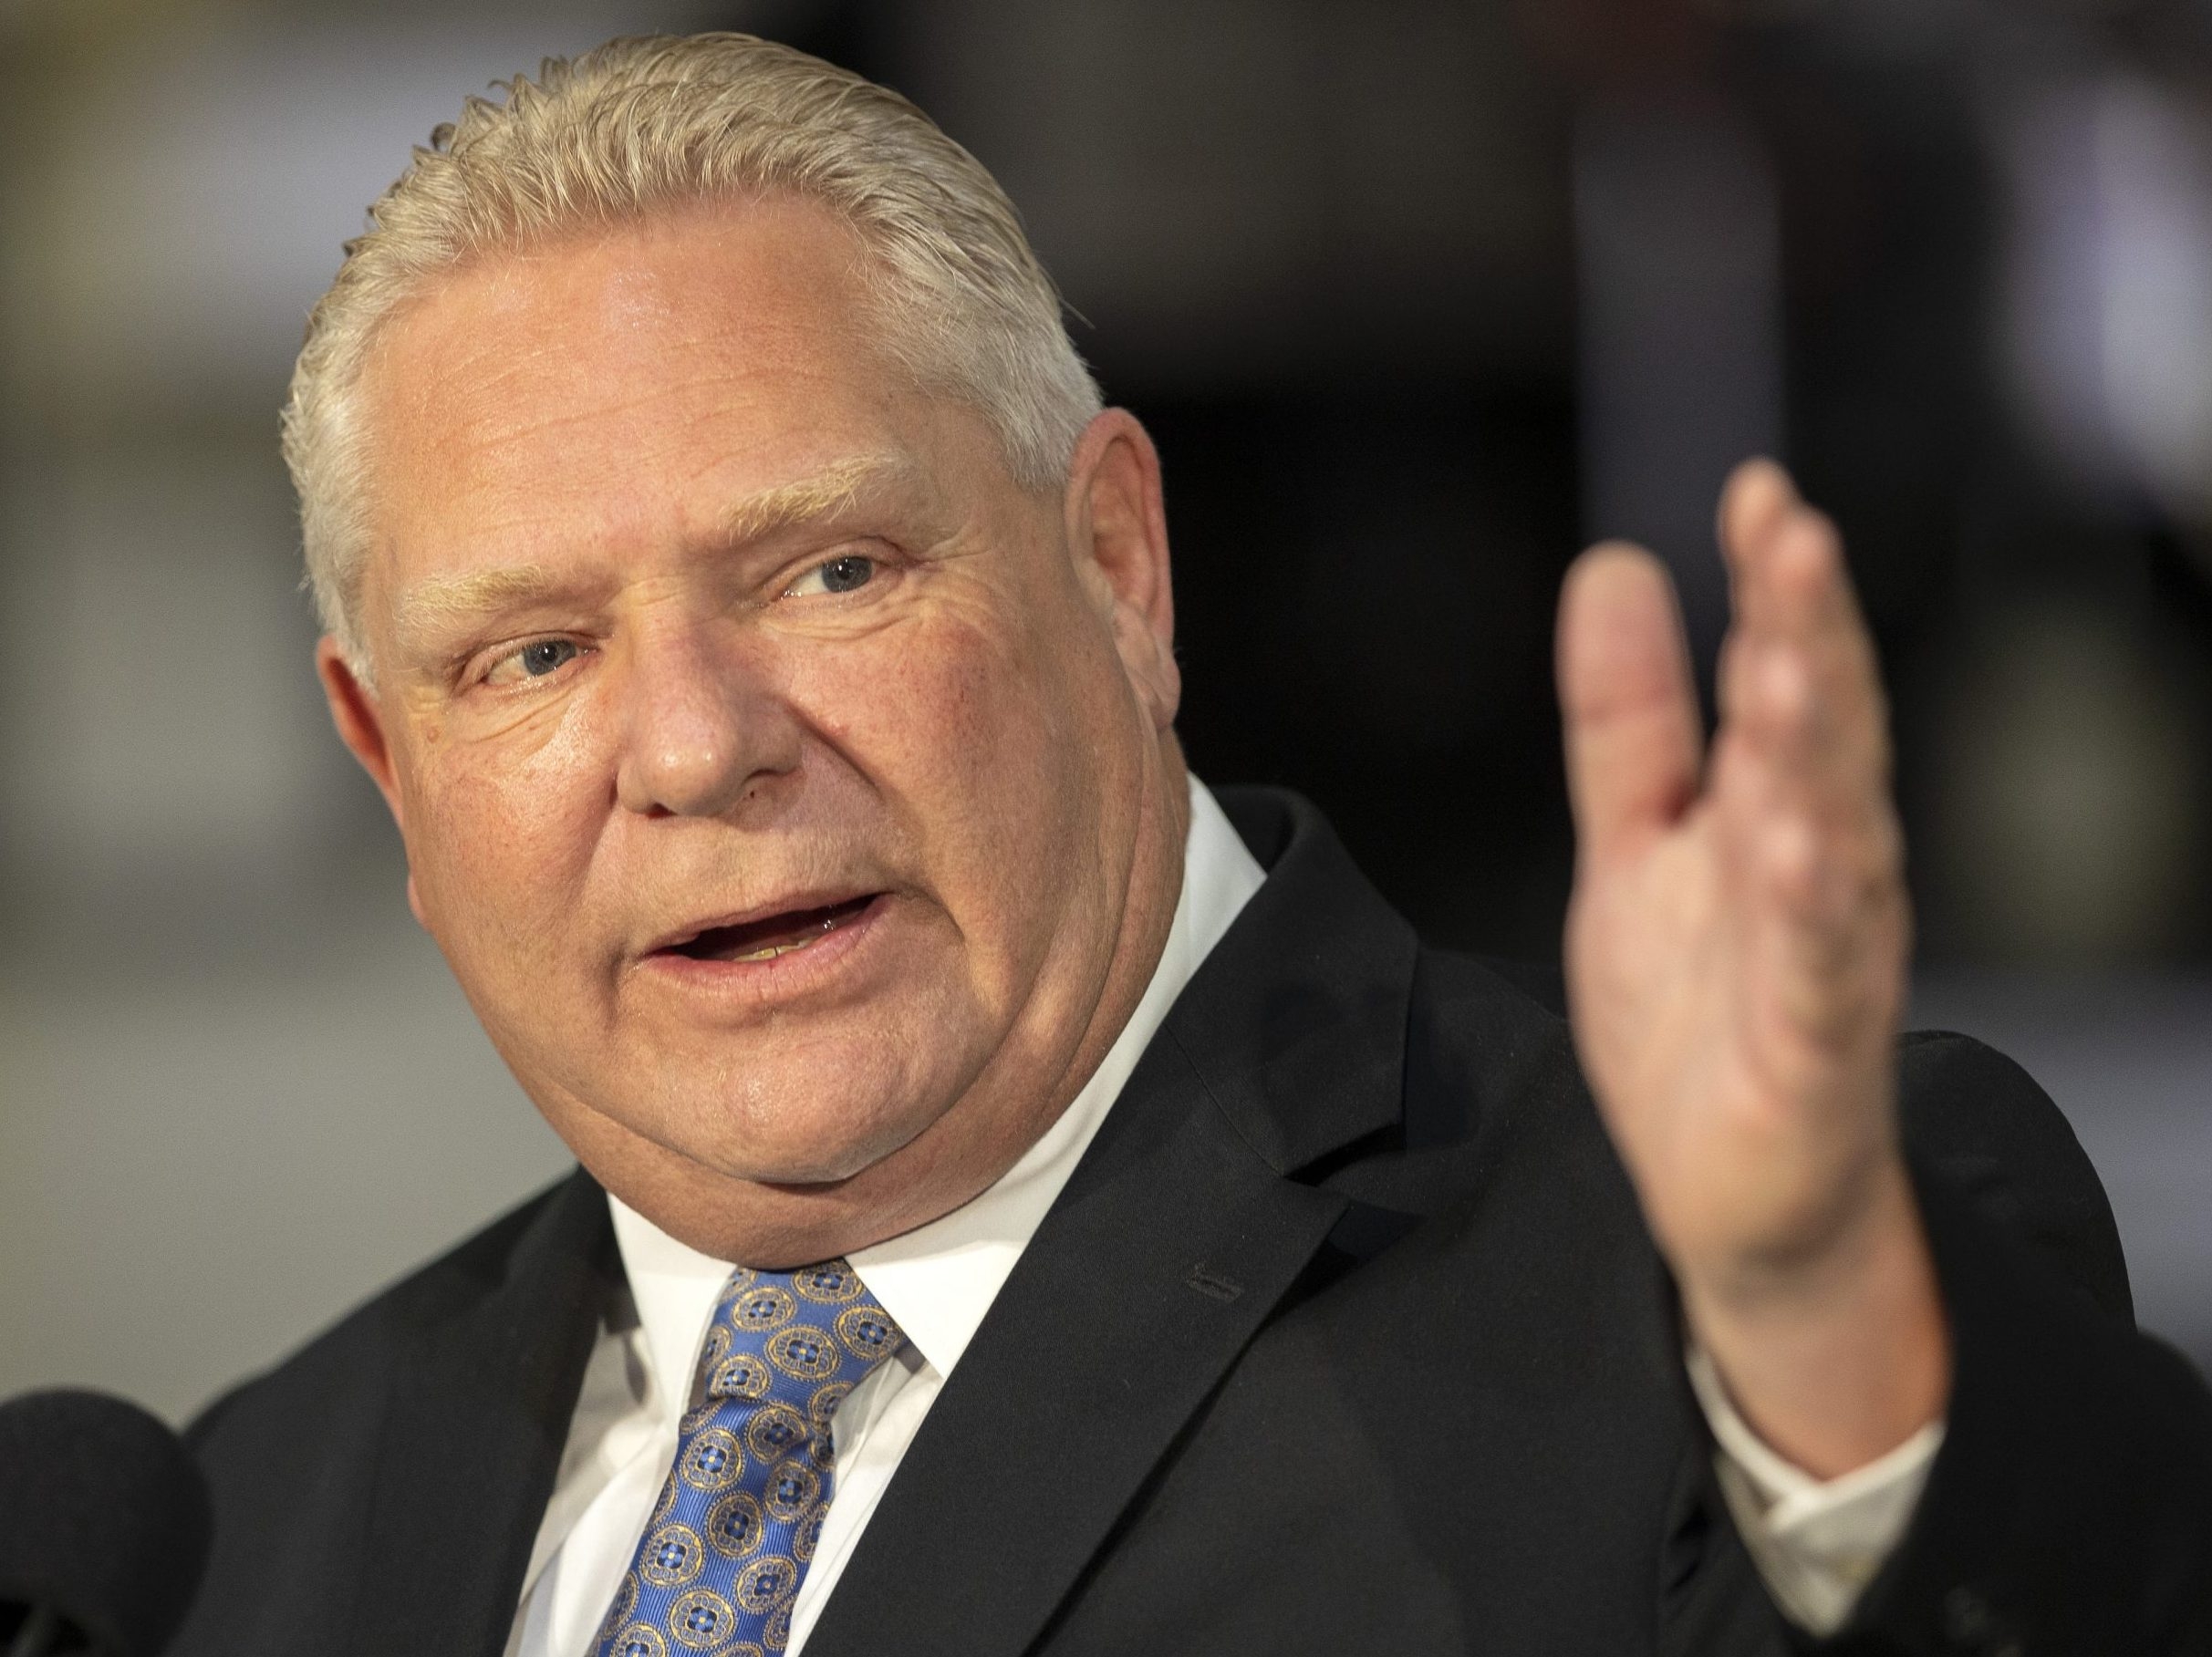 Ford n’est pas un conservateur fiscal – il dépense plus que Wynne : Rapport